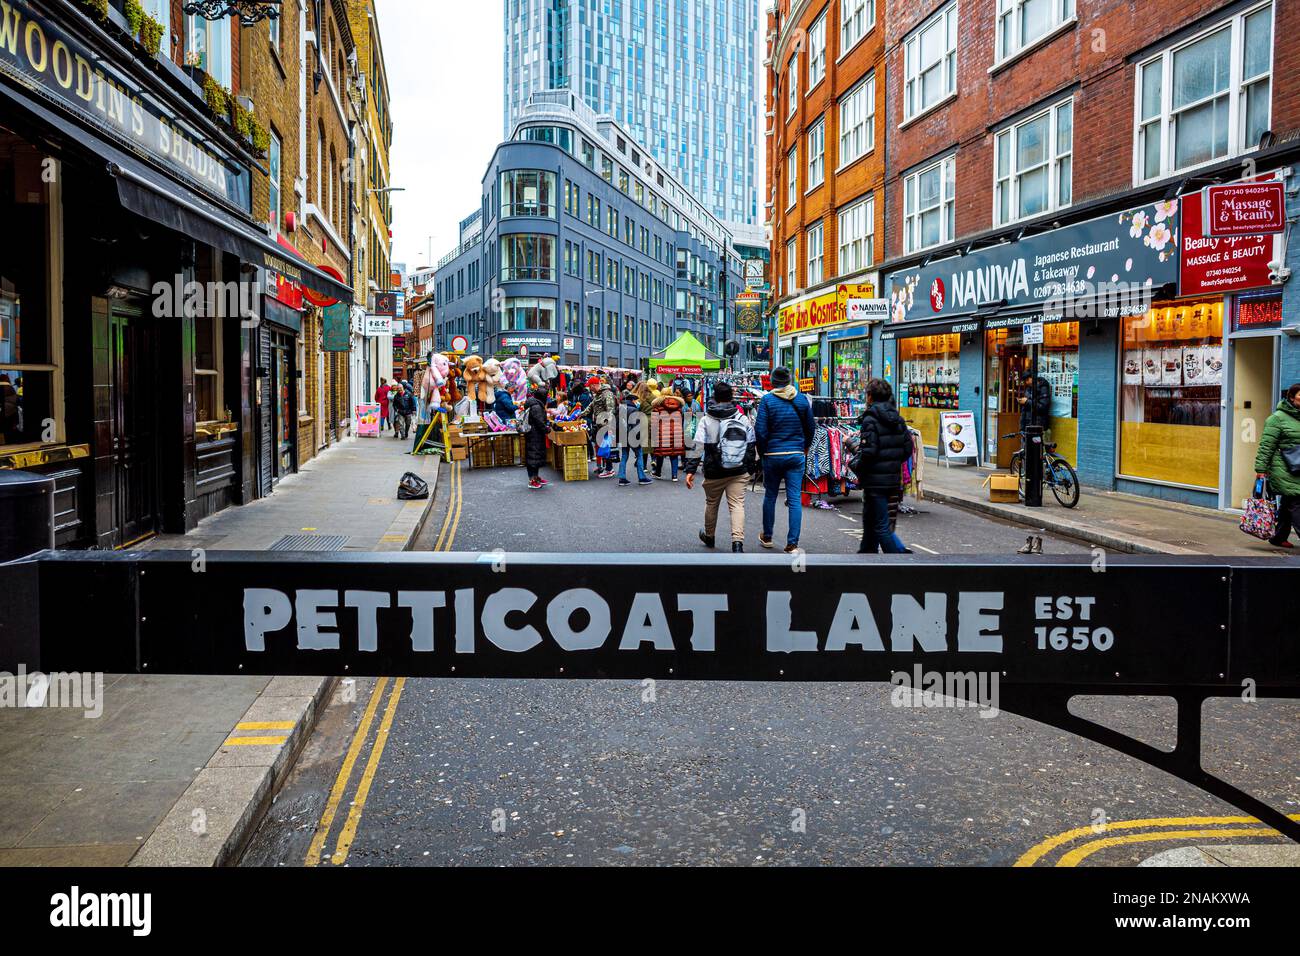 Jupticoat Lane Market Londres. Créé en 1650, le marché de Petticoat Lane est un marché de la mode et de l'habillement à Spitalfields Londres. La plus ancienne rue de Londres mkt. Banque D'Images